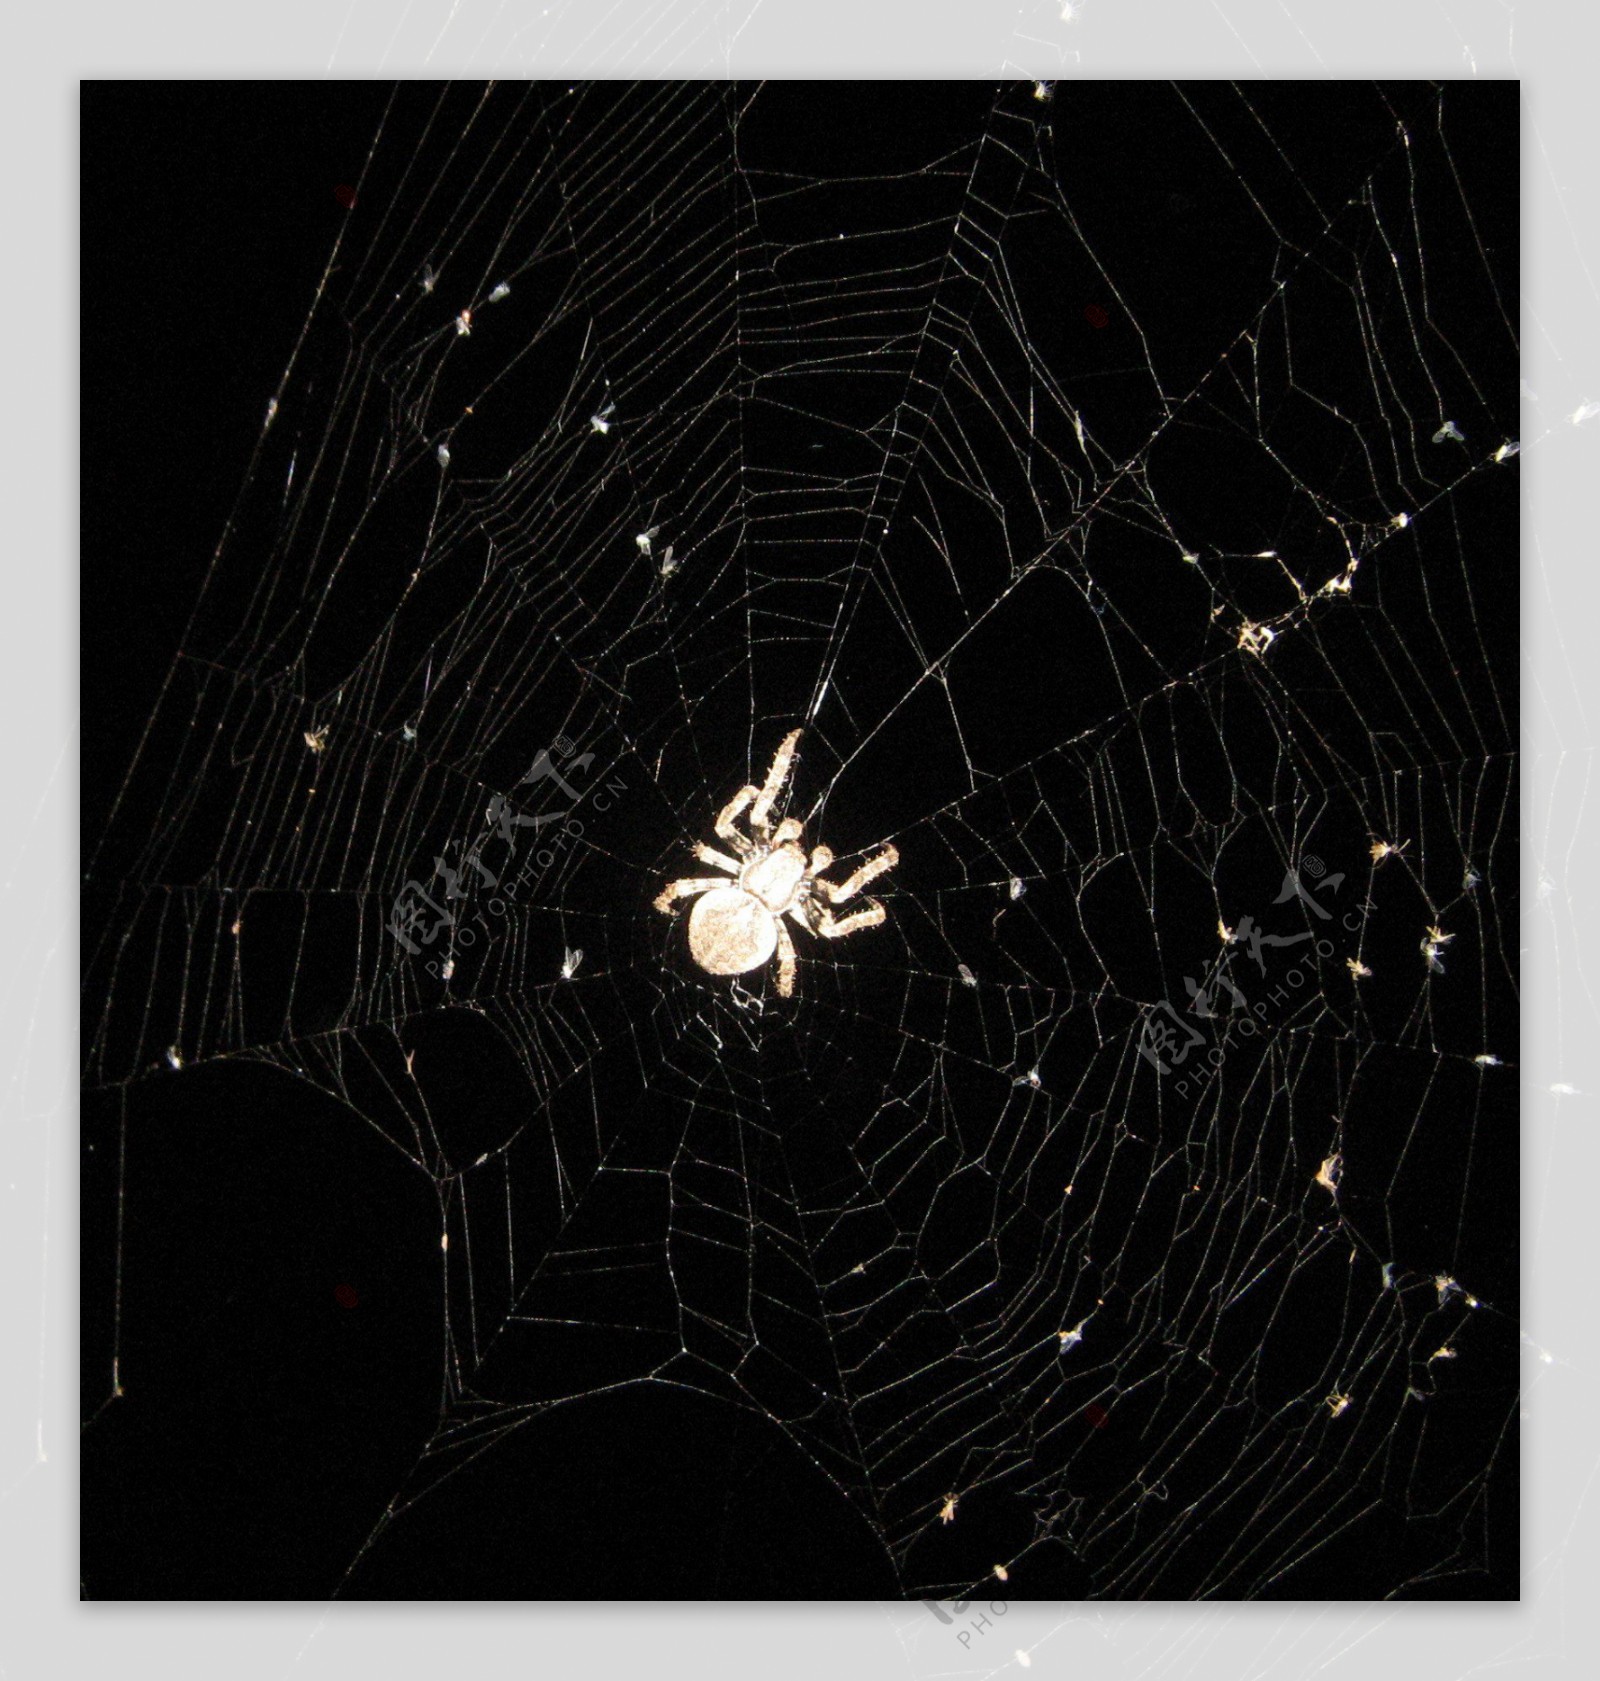 蜘蛛蜘蛛网图片